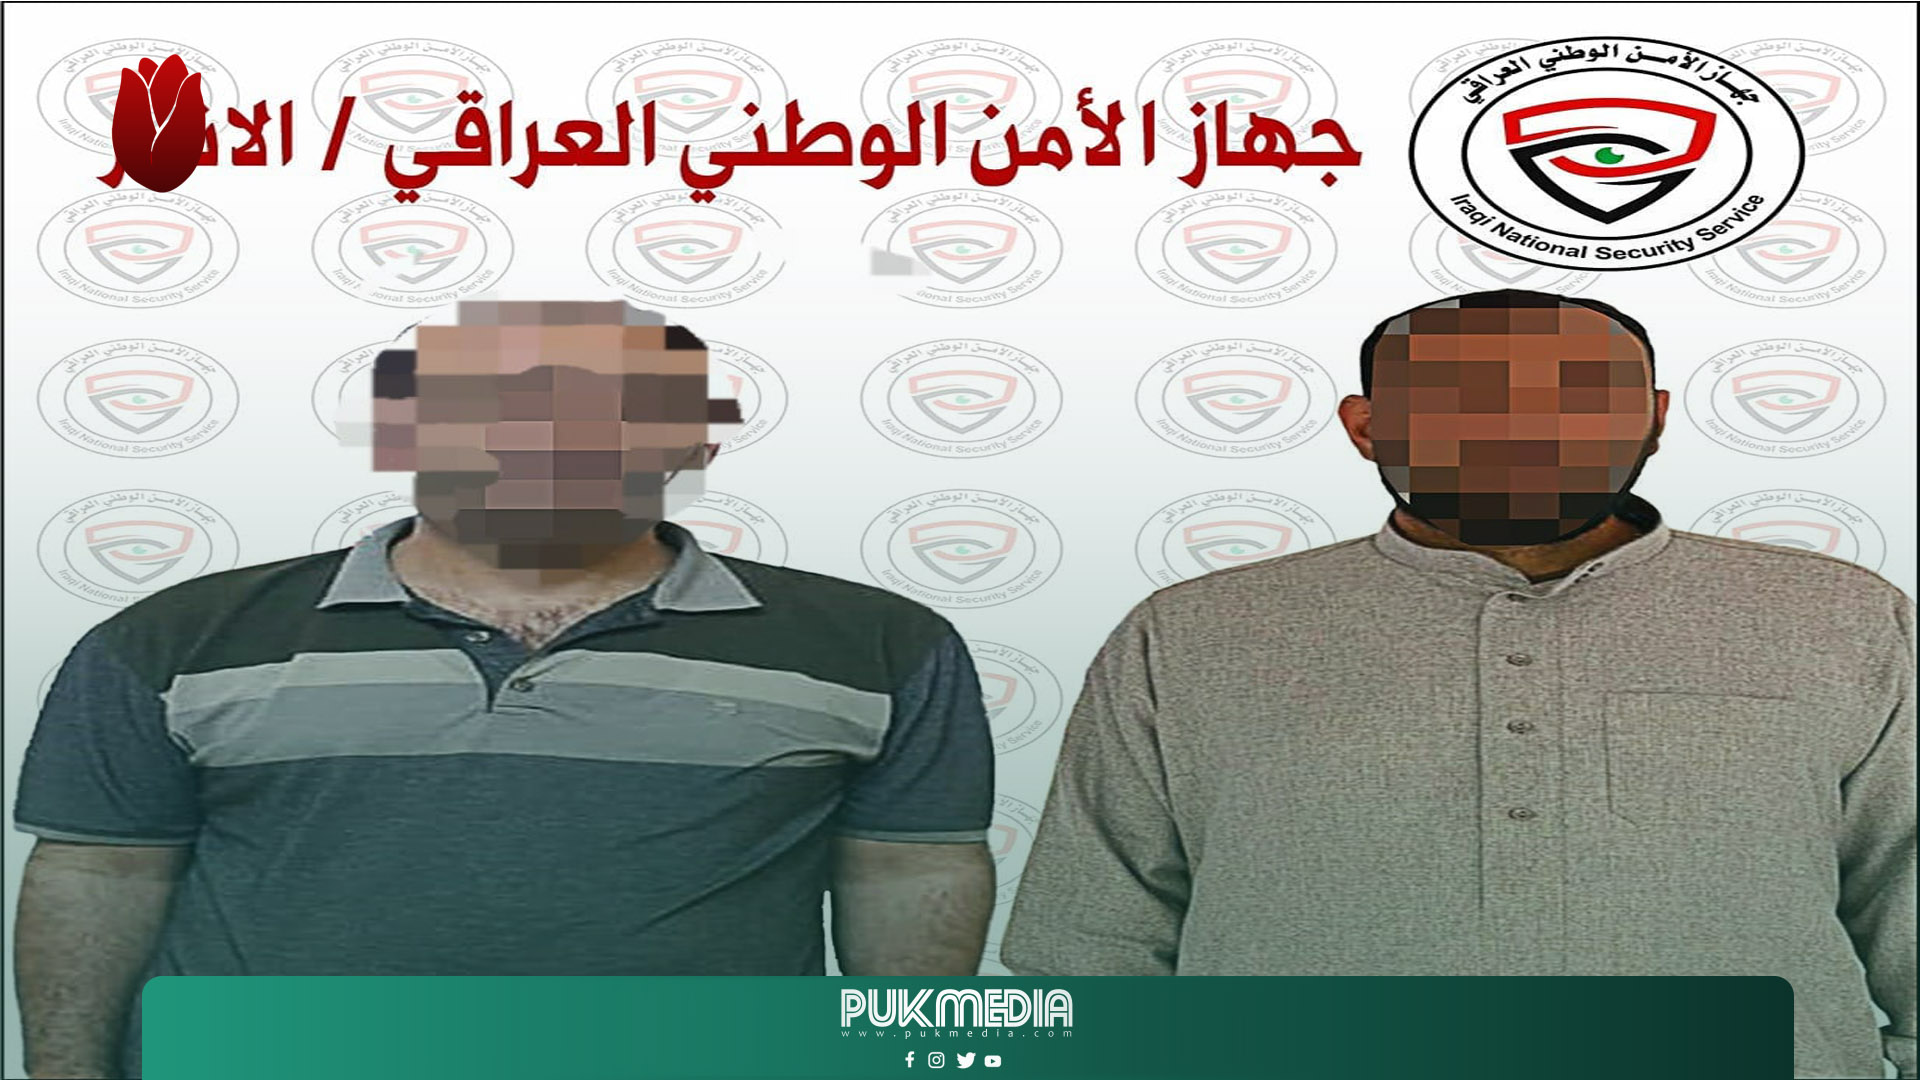 اعتقال 2 من ارهابيي داعش في الانبار